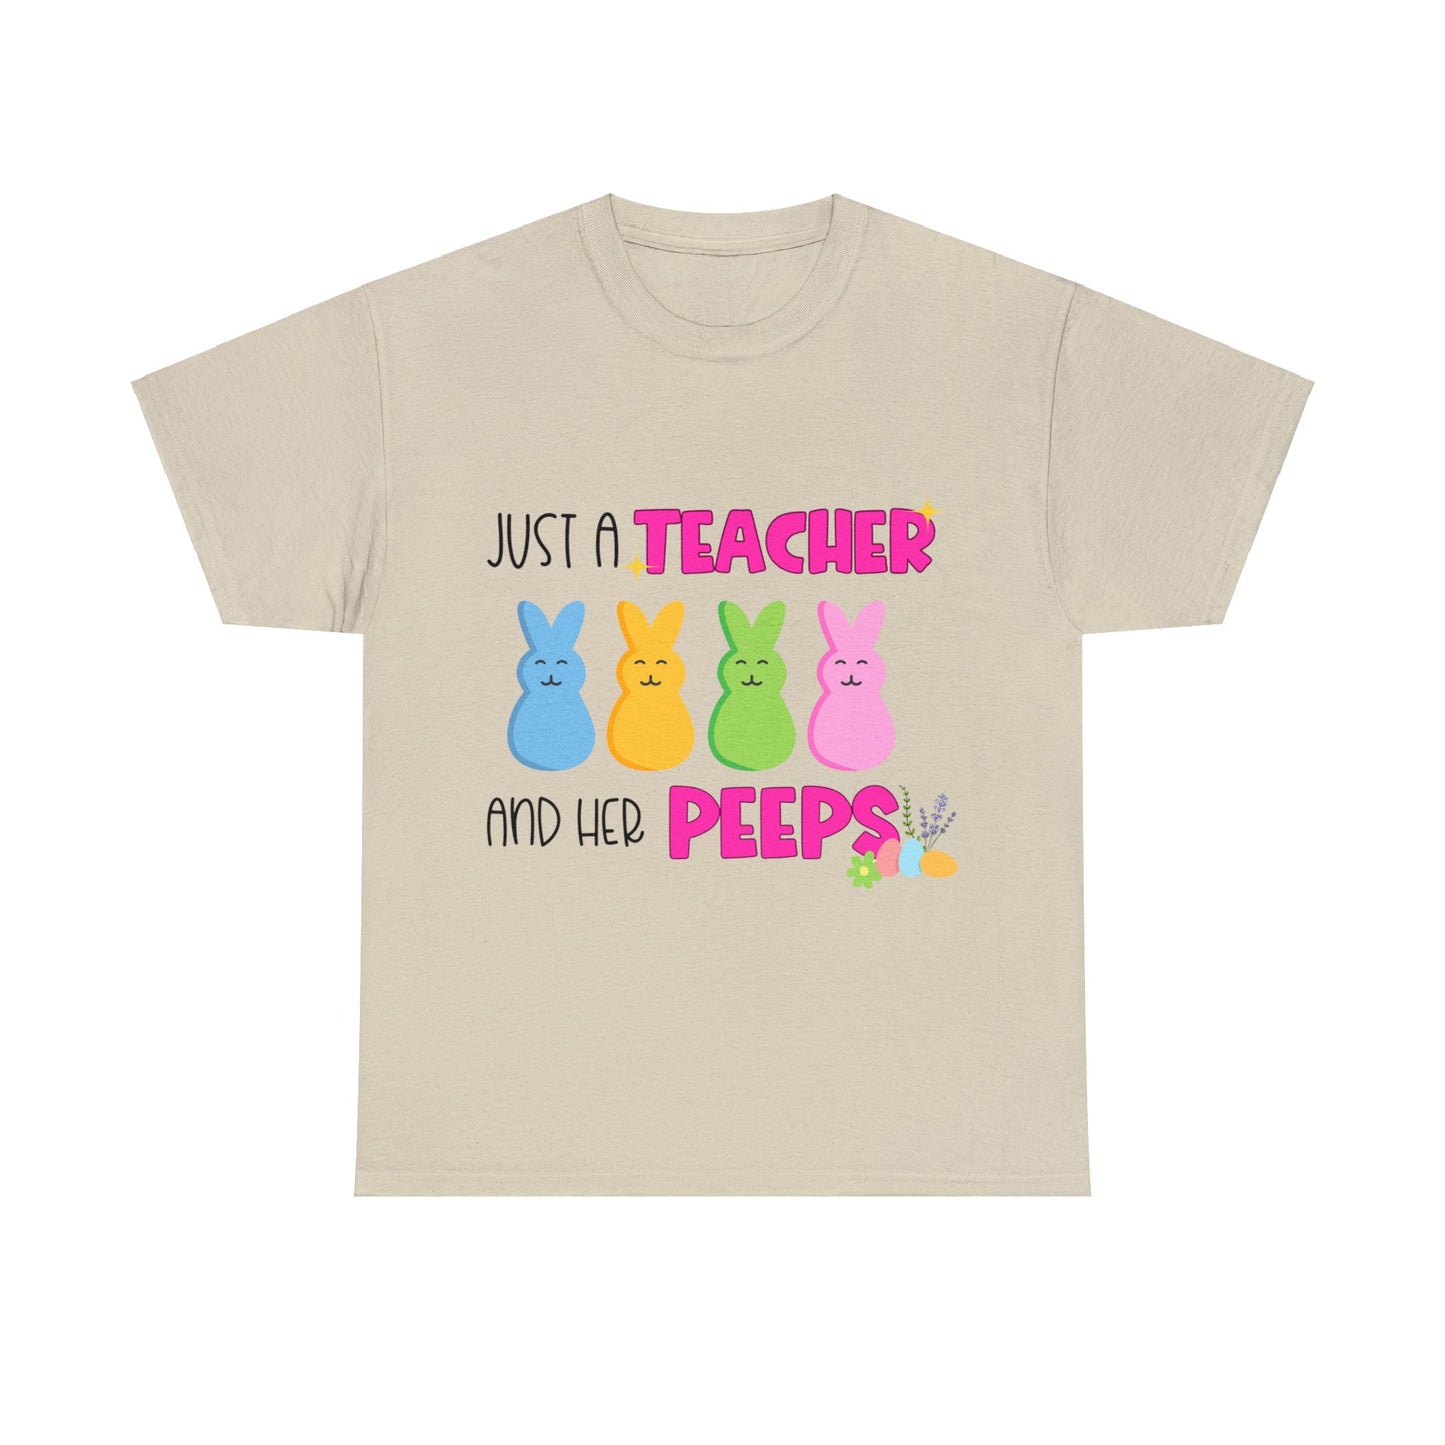 Just a Teacher and her Peeps - Unisex T-Shirt